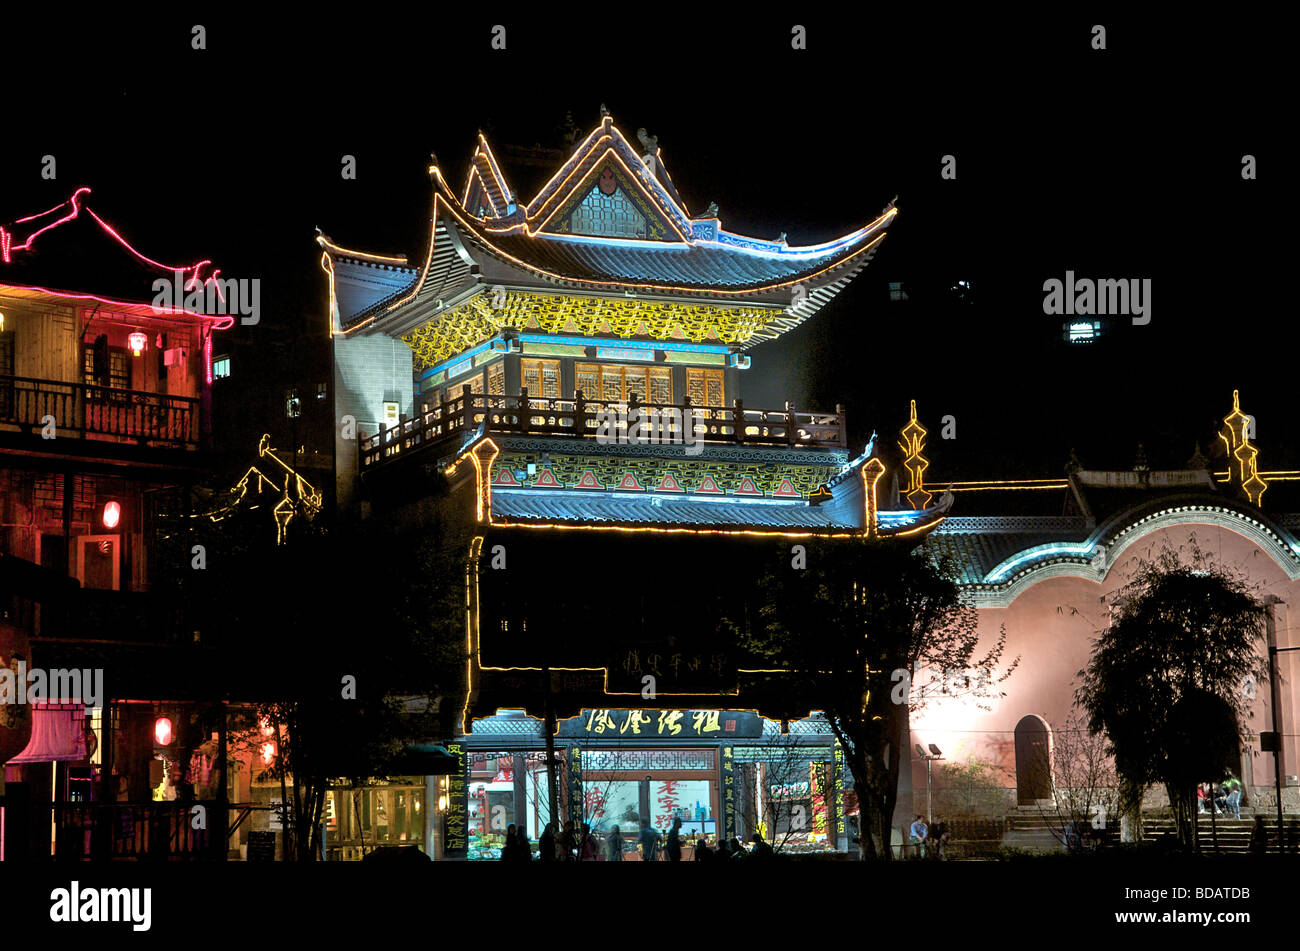 Les bâtiments éclairés la nuit, ville ancienne de Fenghuang Chine Hunan Banque D'Images